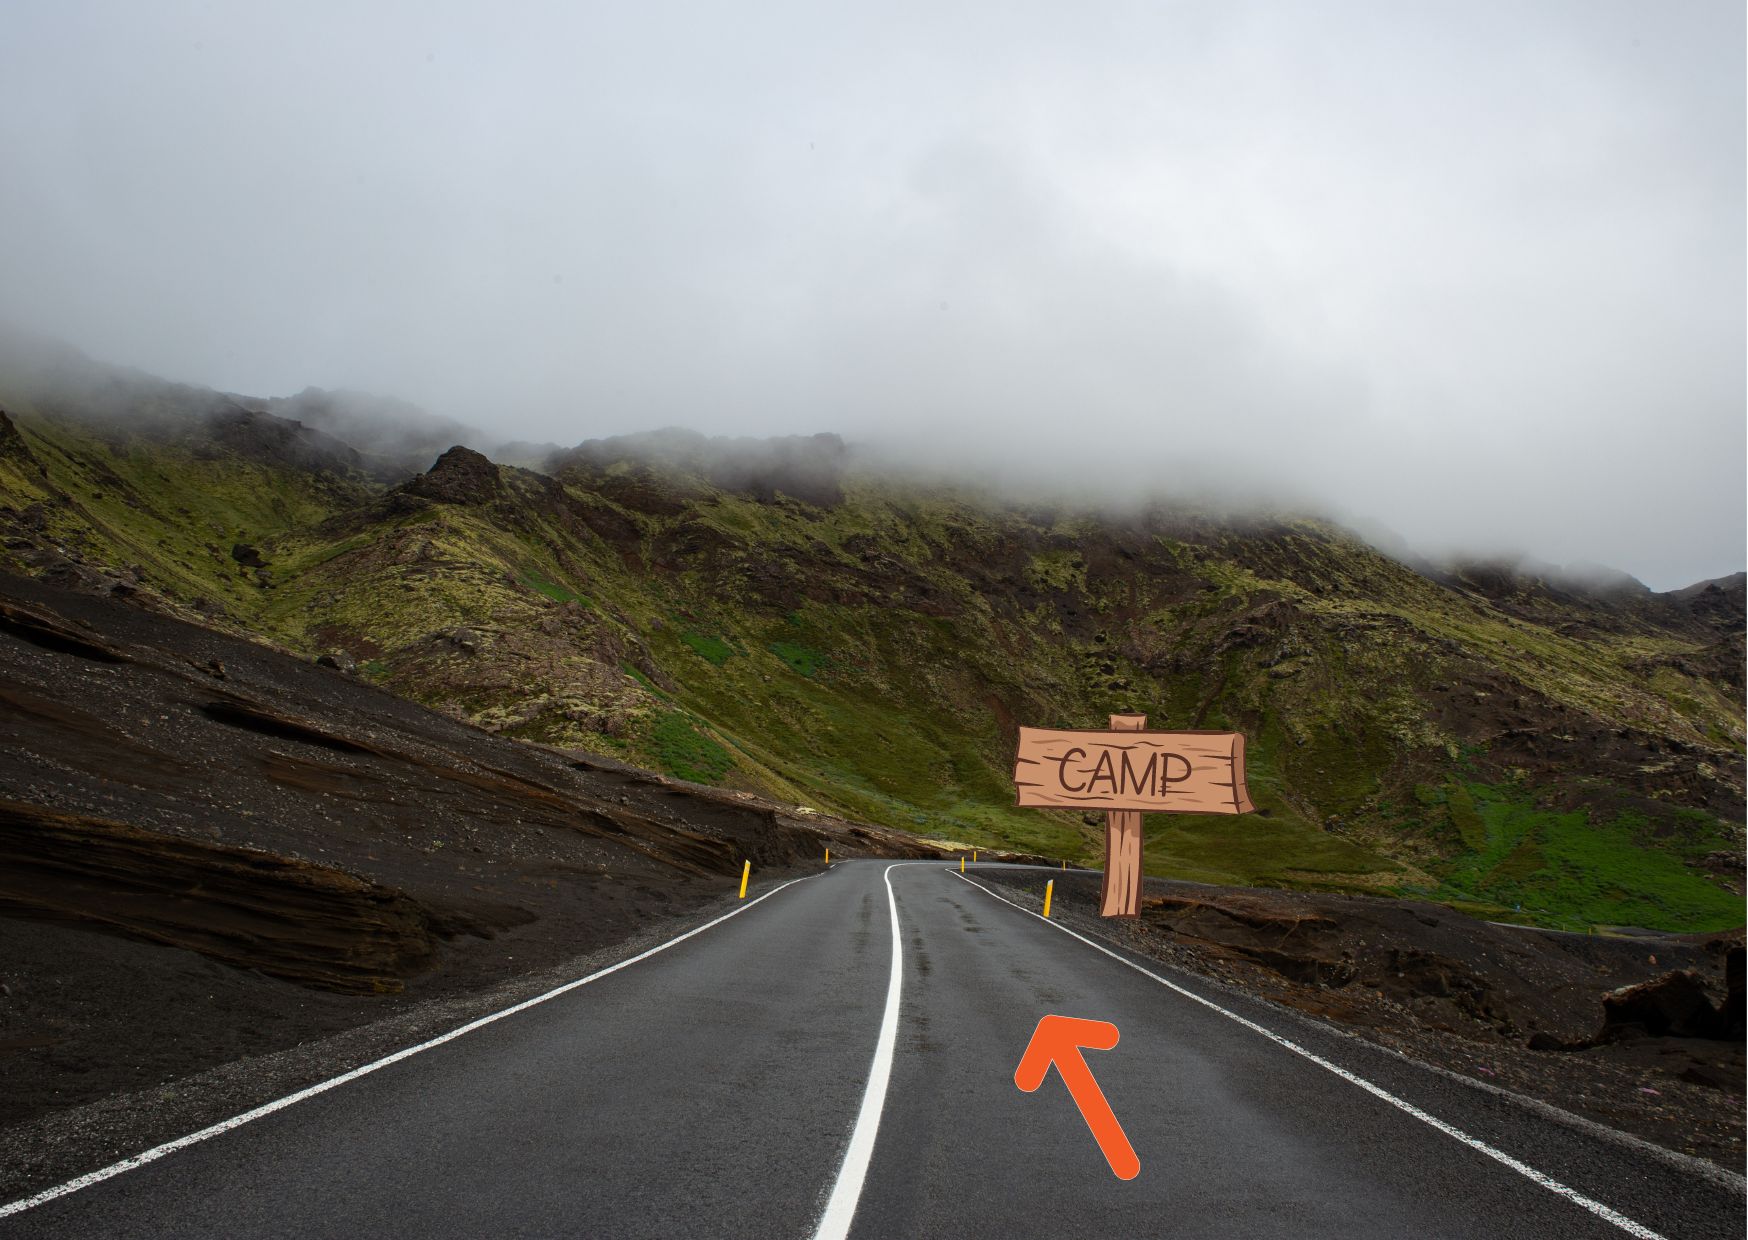 La imagen muestra una carretera remota con una flecha indicando el camino y otra señal que indica la lelgada al campamento. 